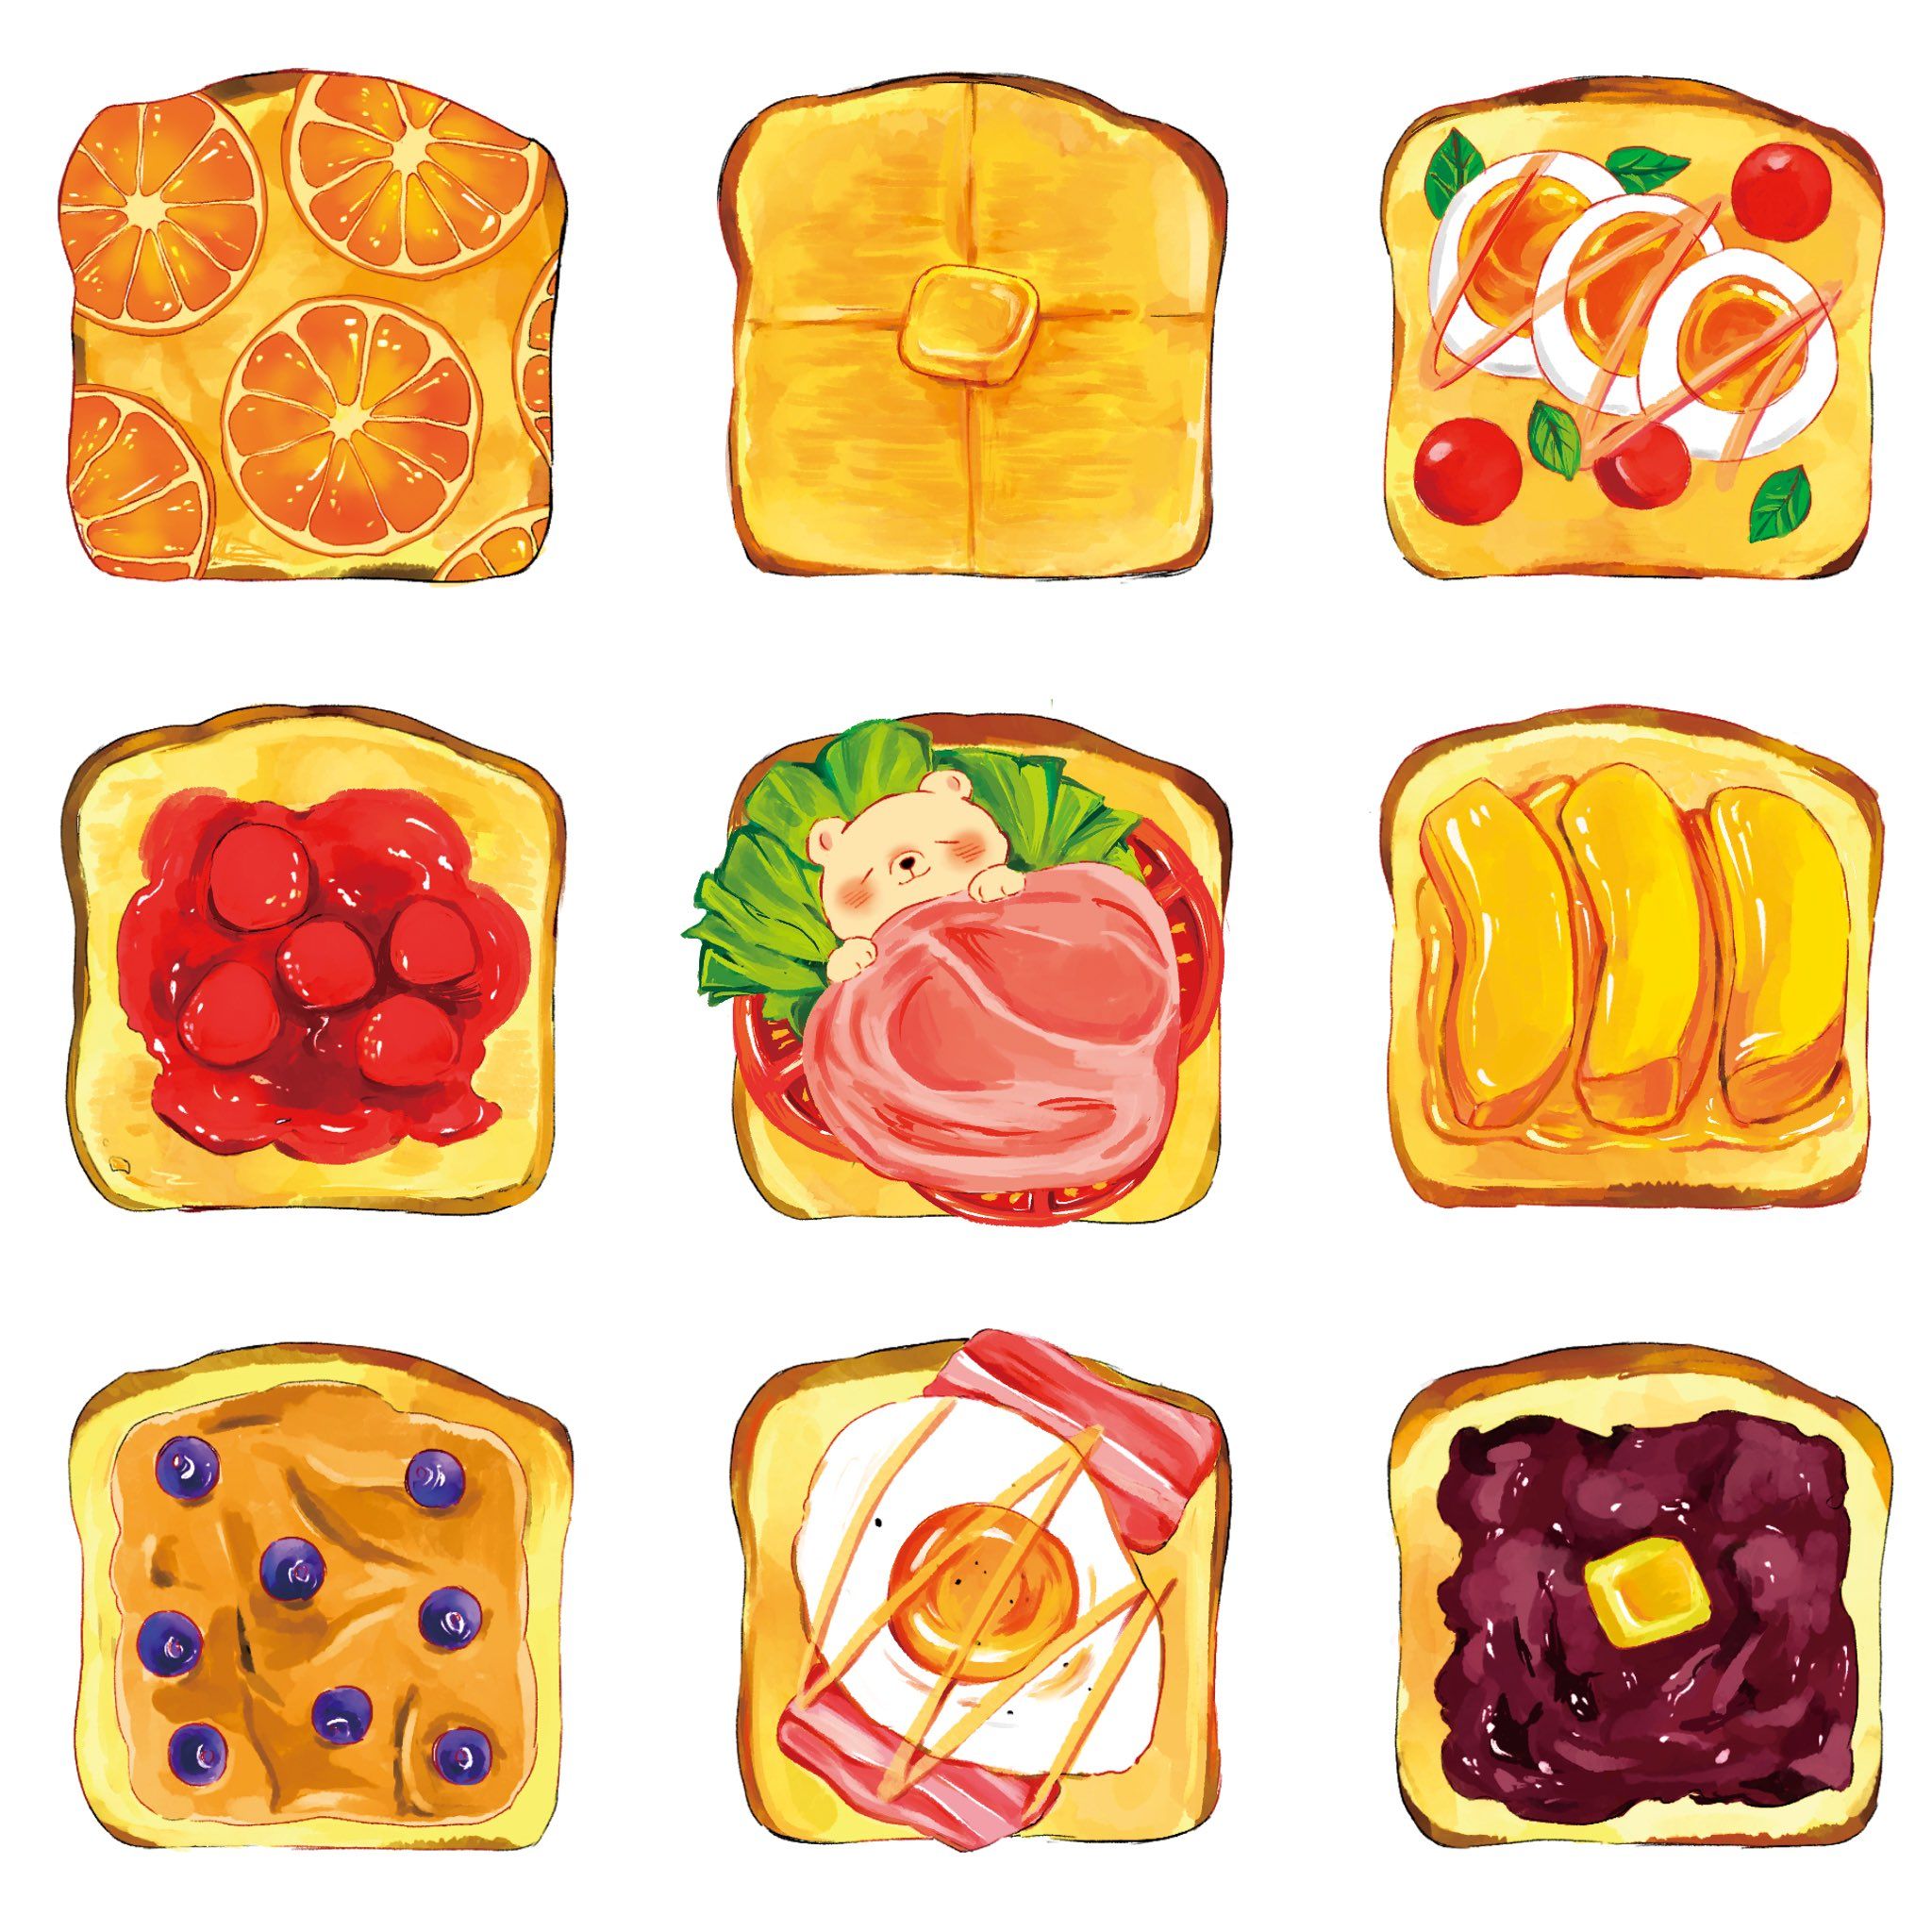 Những Hình Vẽ Cute đơn Giản đồ ăn Những Lát Bánh Mì Hấp Dẫn